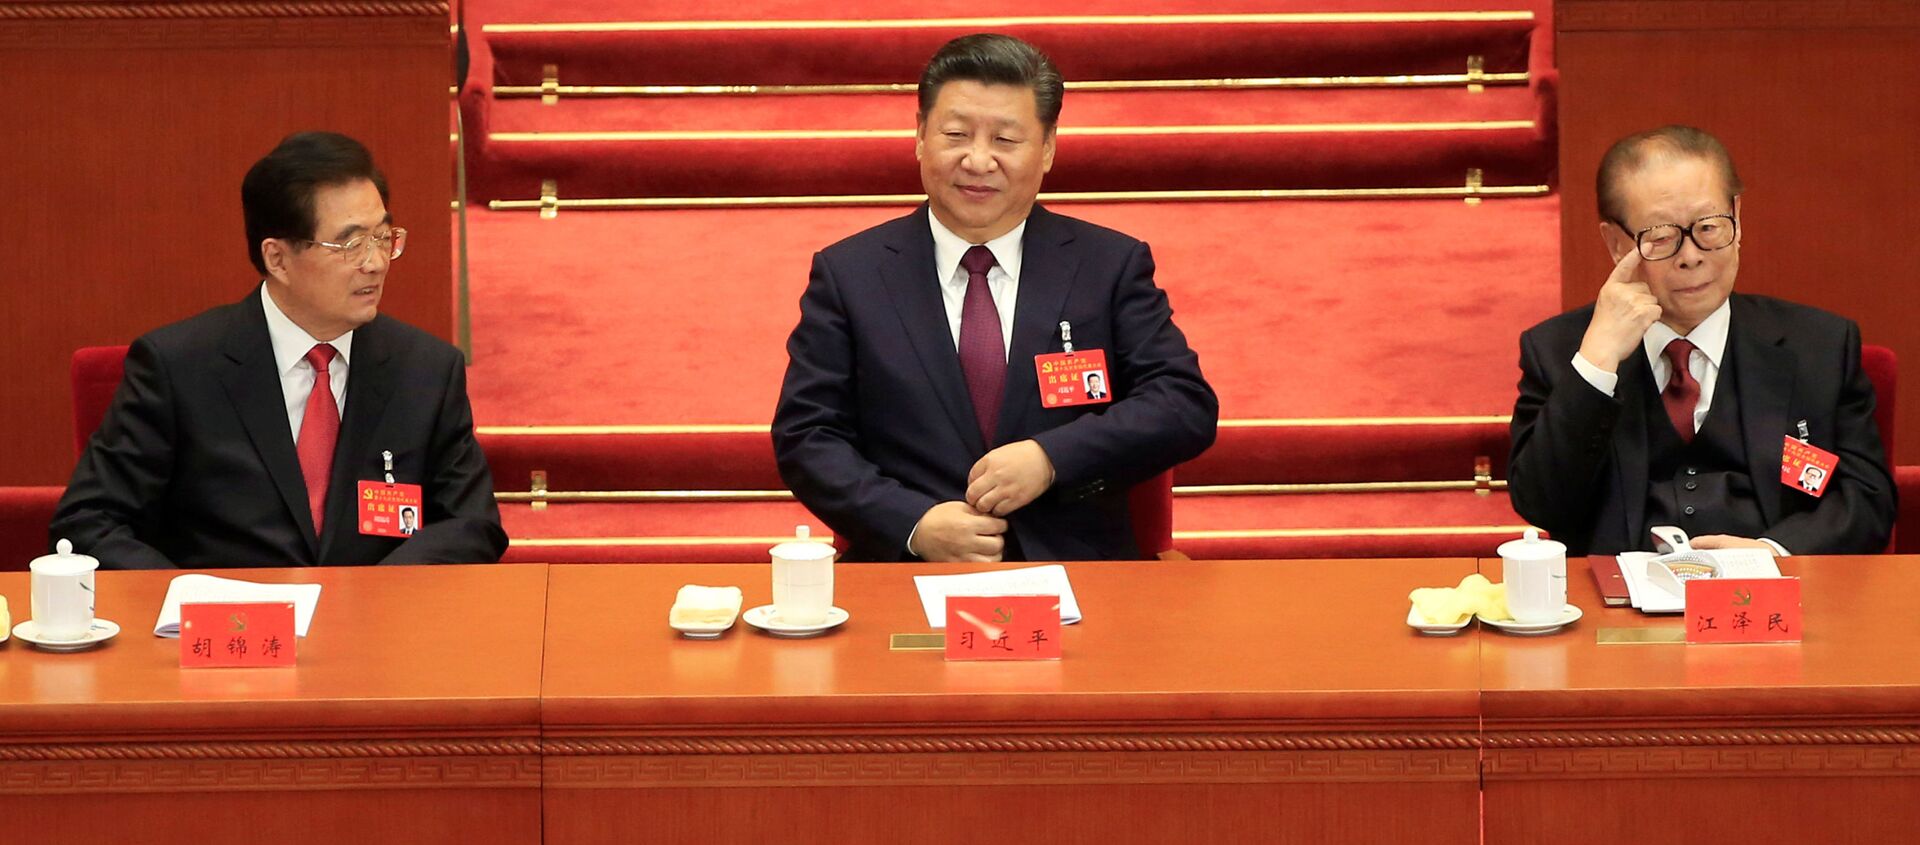  الرئيس الصيني شي جين بينغ في المؤتمر التاسع عشر للحزب الشيوعي في بكين، الصين 18 أكتوبر/ تشرين الأول 2017 - سبوتنيك عربي, 1920, 01.07.2021